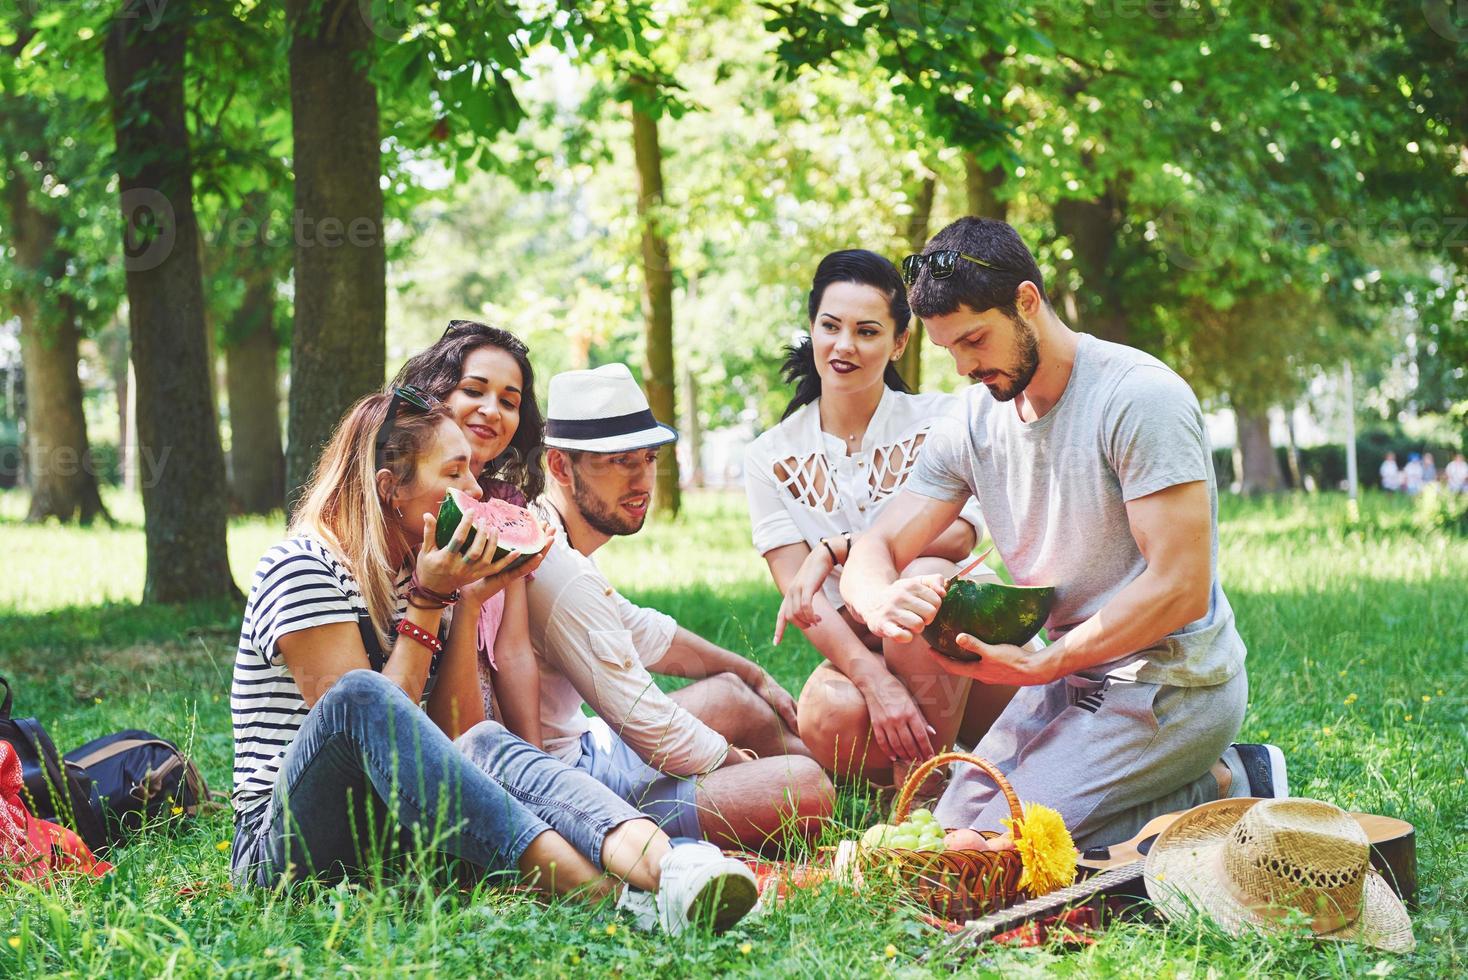 grupo de amigos fazendo piquenique em um parque em um dia ensolarado - pessoas saindo, se divertindo enquanto grelha e relaxa foto